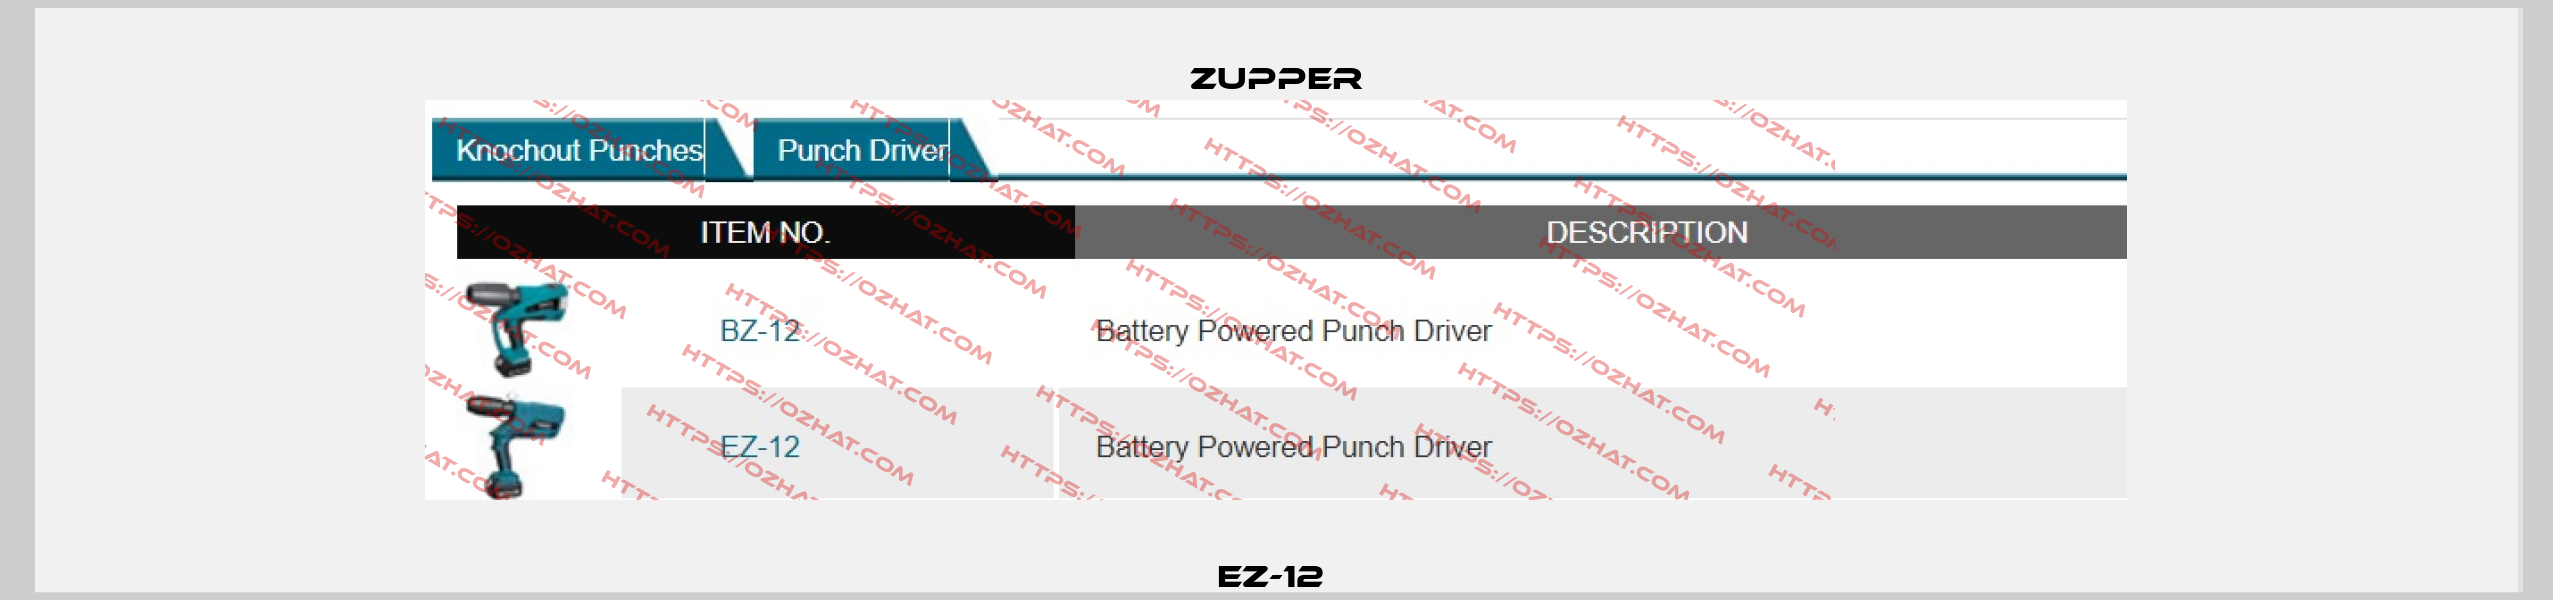 EZ-12  Zupper